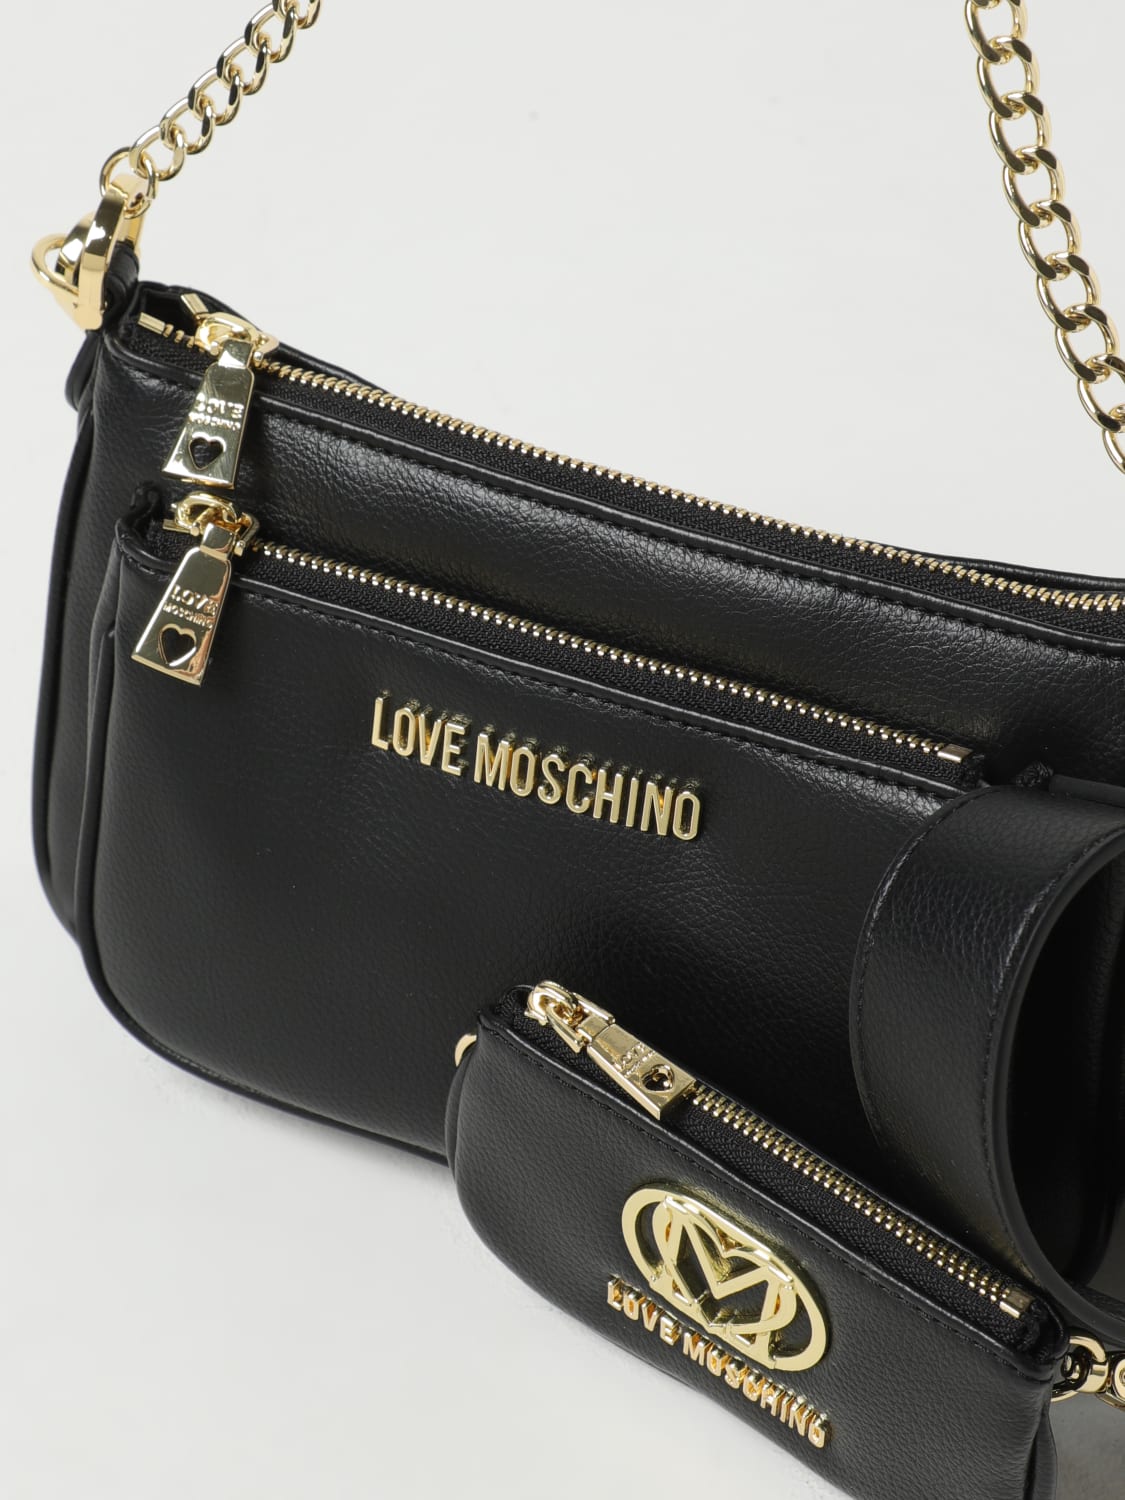 Love Moschino Women's Black Handbag